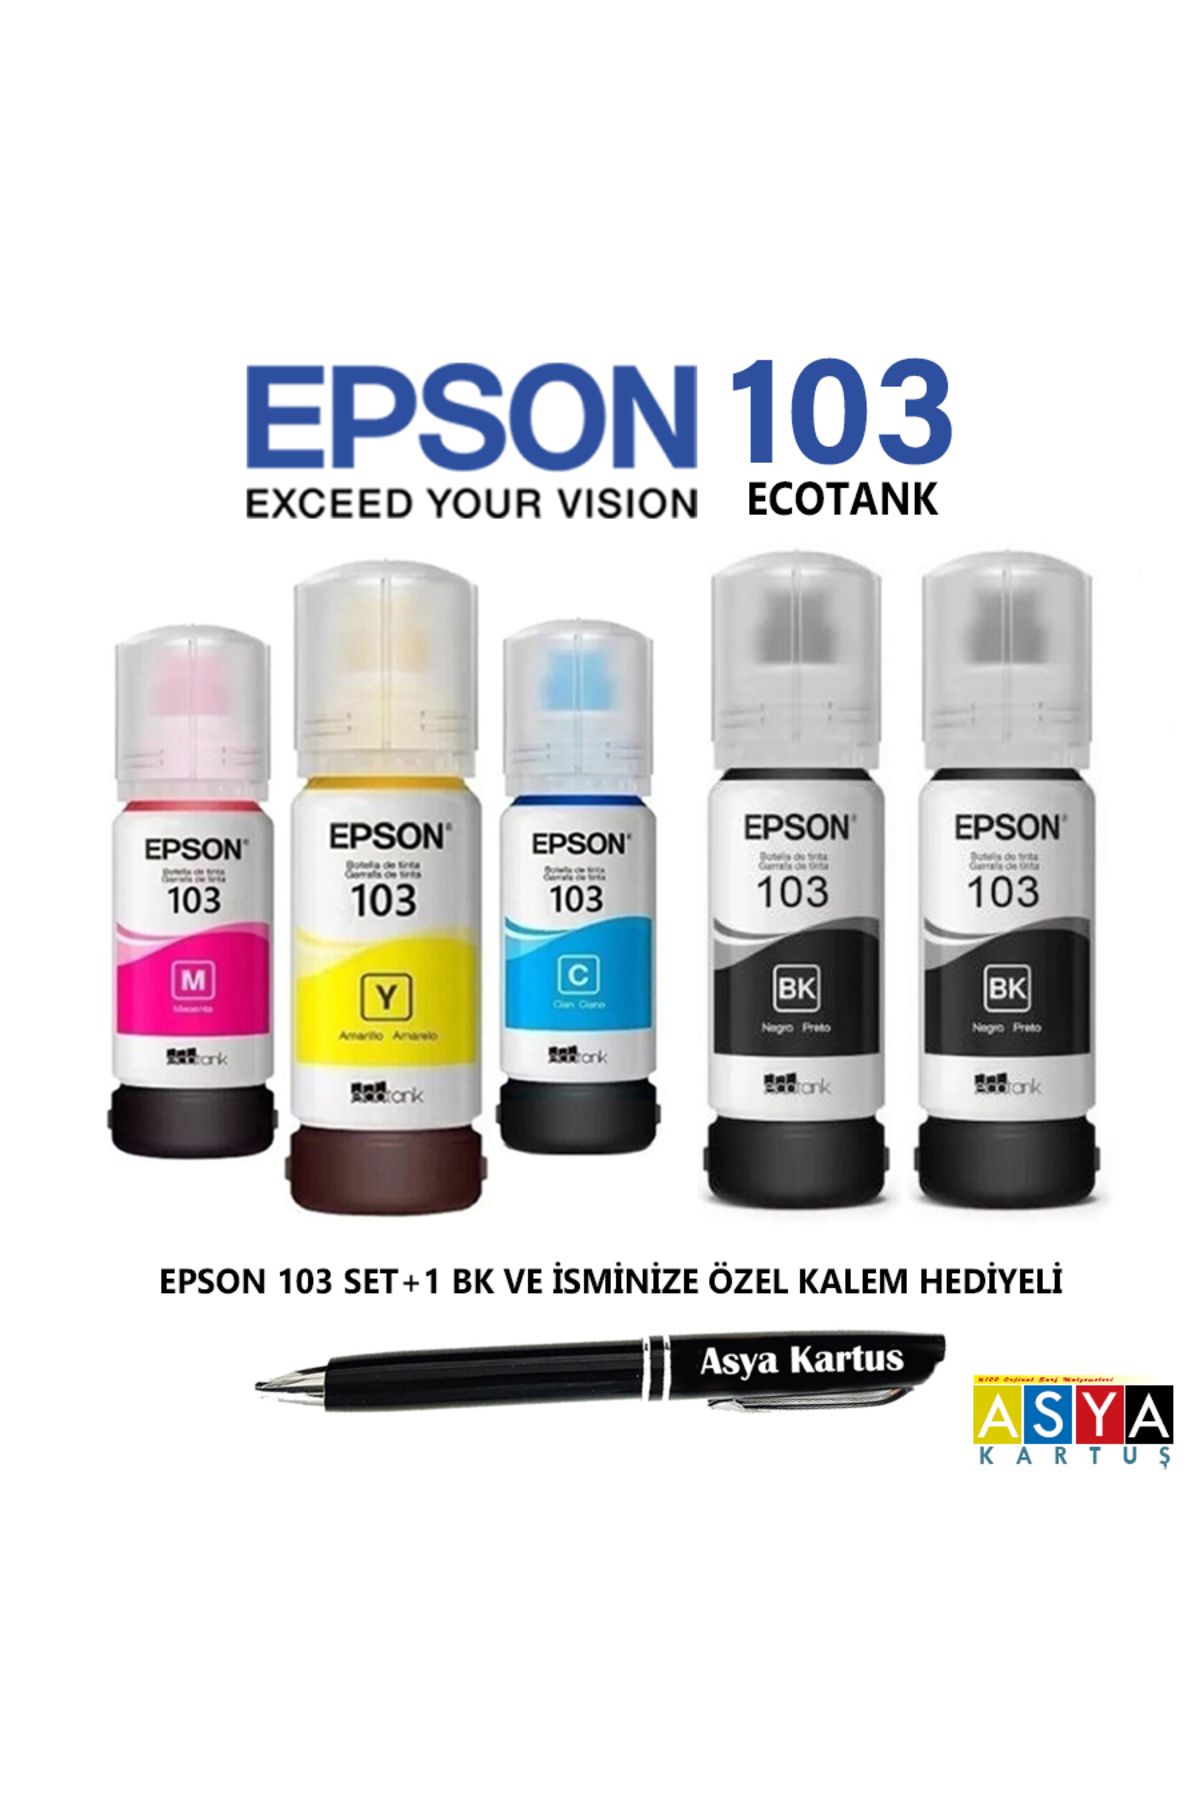 Epson 103 renkli avantaj seti, Epson Ecotank L3256 yazıcı uyumlu 4 renk mürekkep +1 siyah kartuş seti